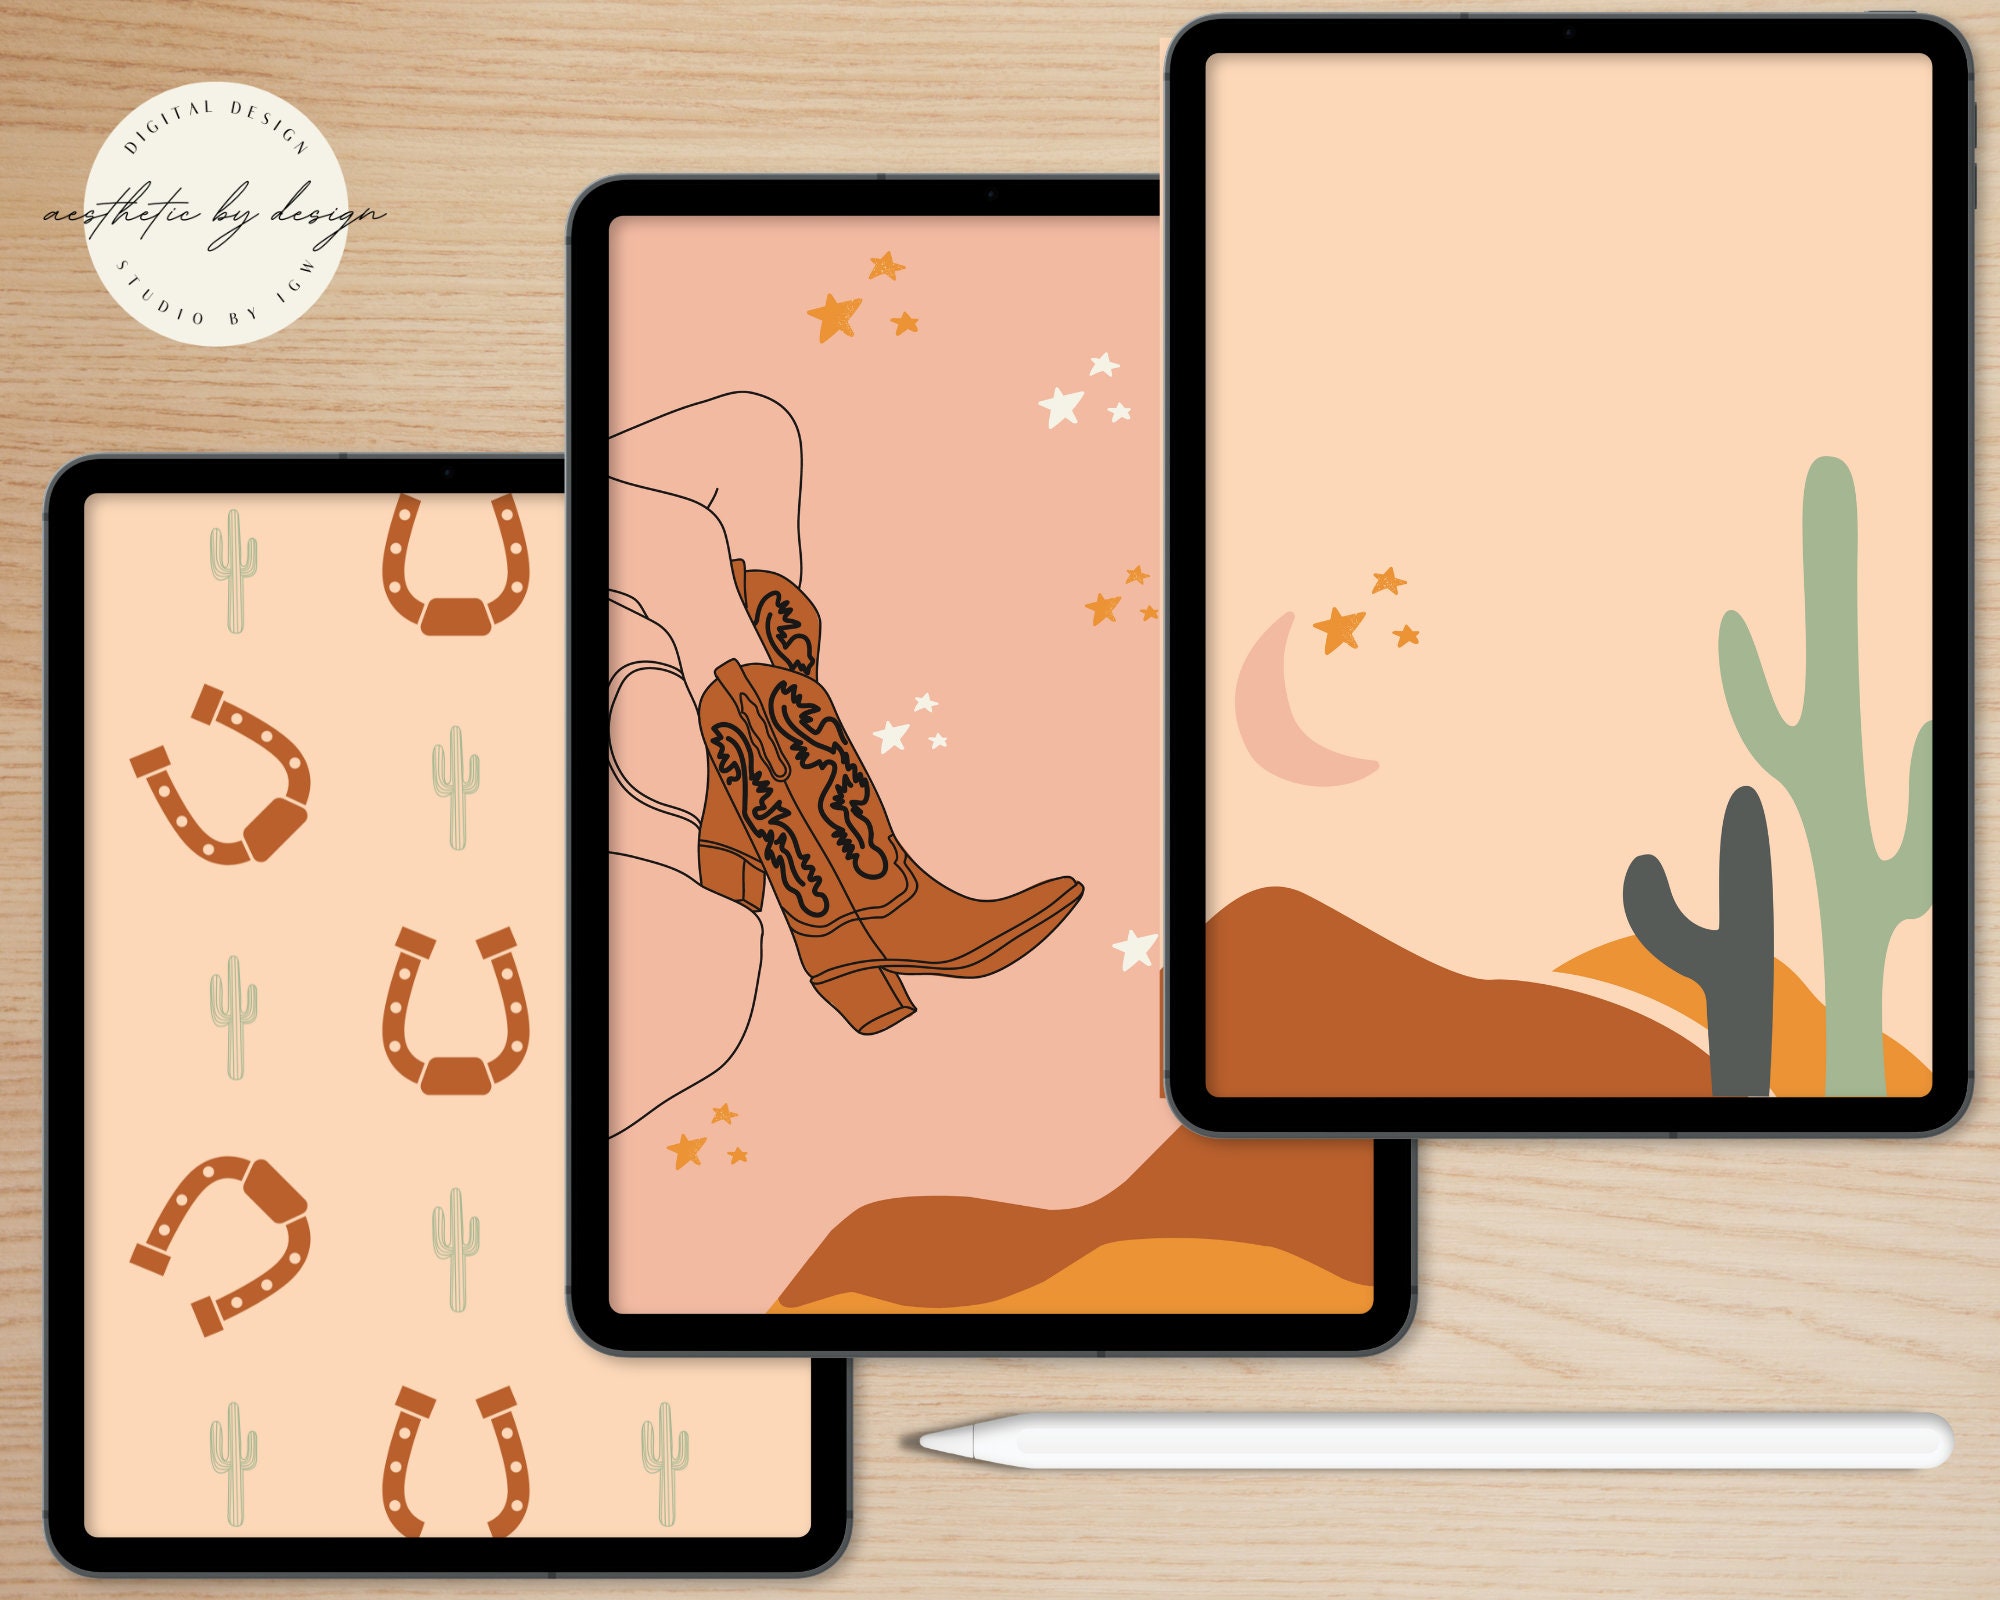 29 Laptop wallpaper ideas in 2023  wallpaper laptop wallpaper cute  wallpapers